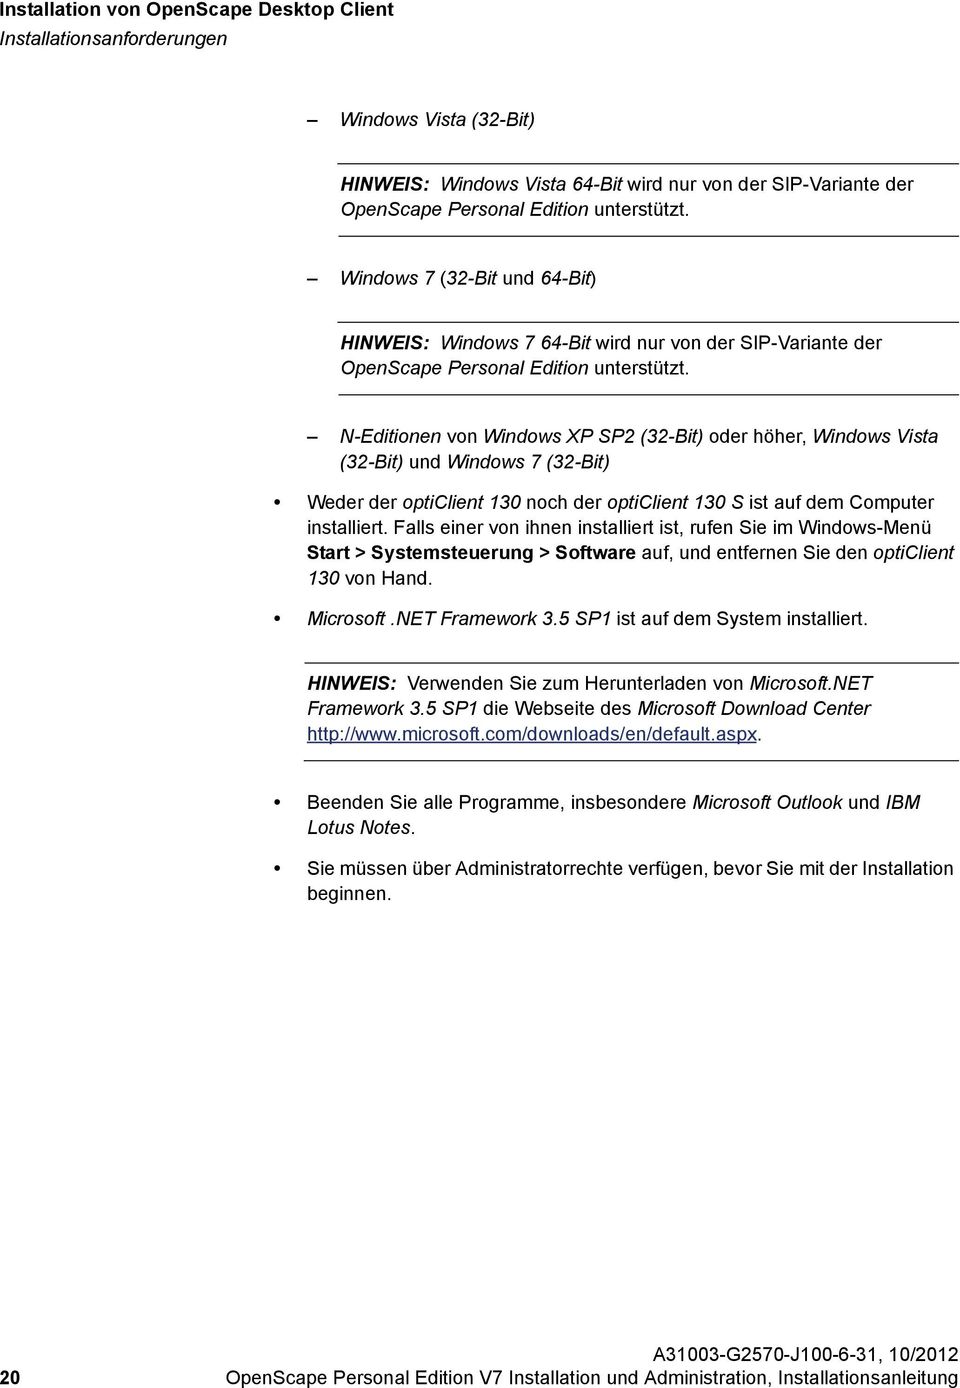 Windows 7 (32-Bit und 64-Bit) HINWEIS: Windows 7 64-Bit wird nur von der SIP-Variante der OpenScape Personal Edition unterstützt.